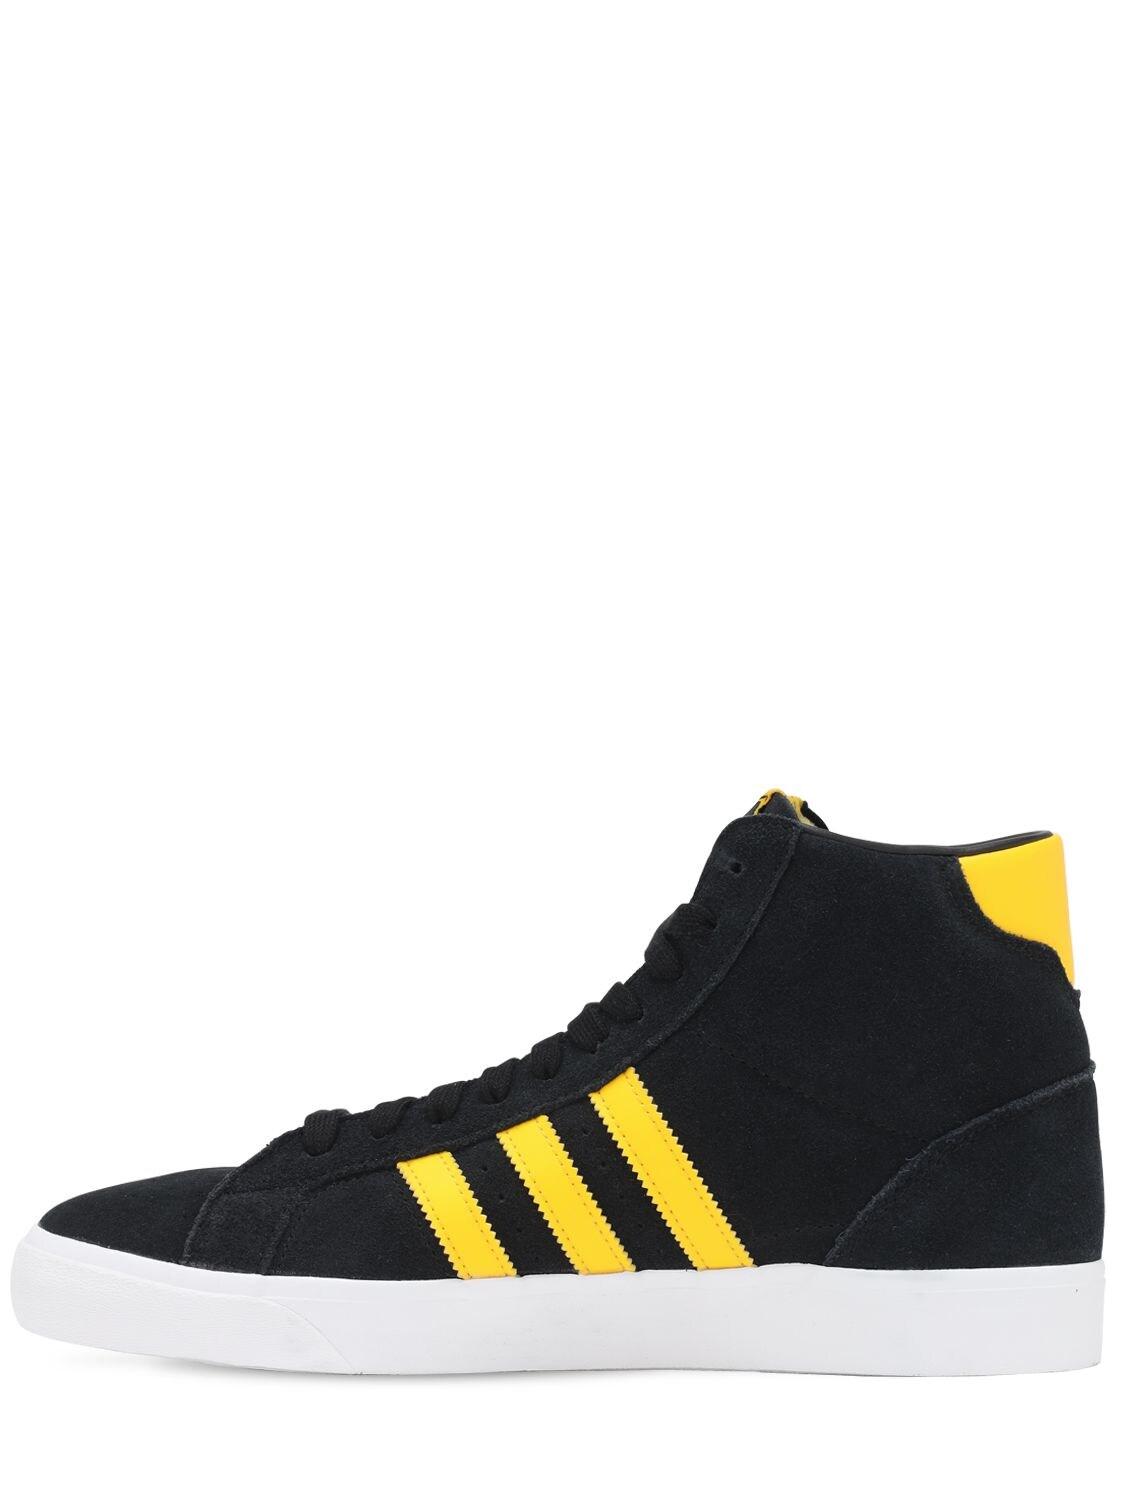 adidas Originals /yellow Basket Profi Sneakers in Black for Men | Lyst